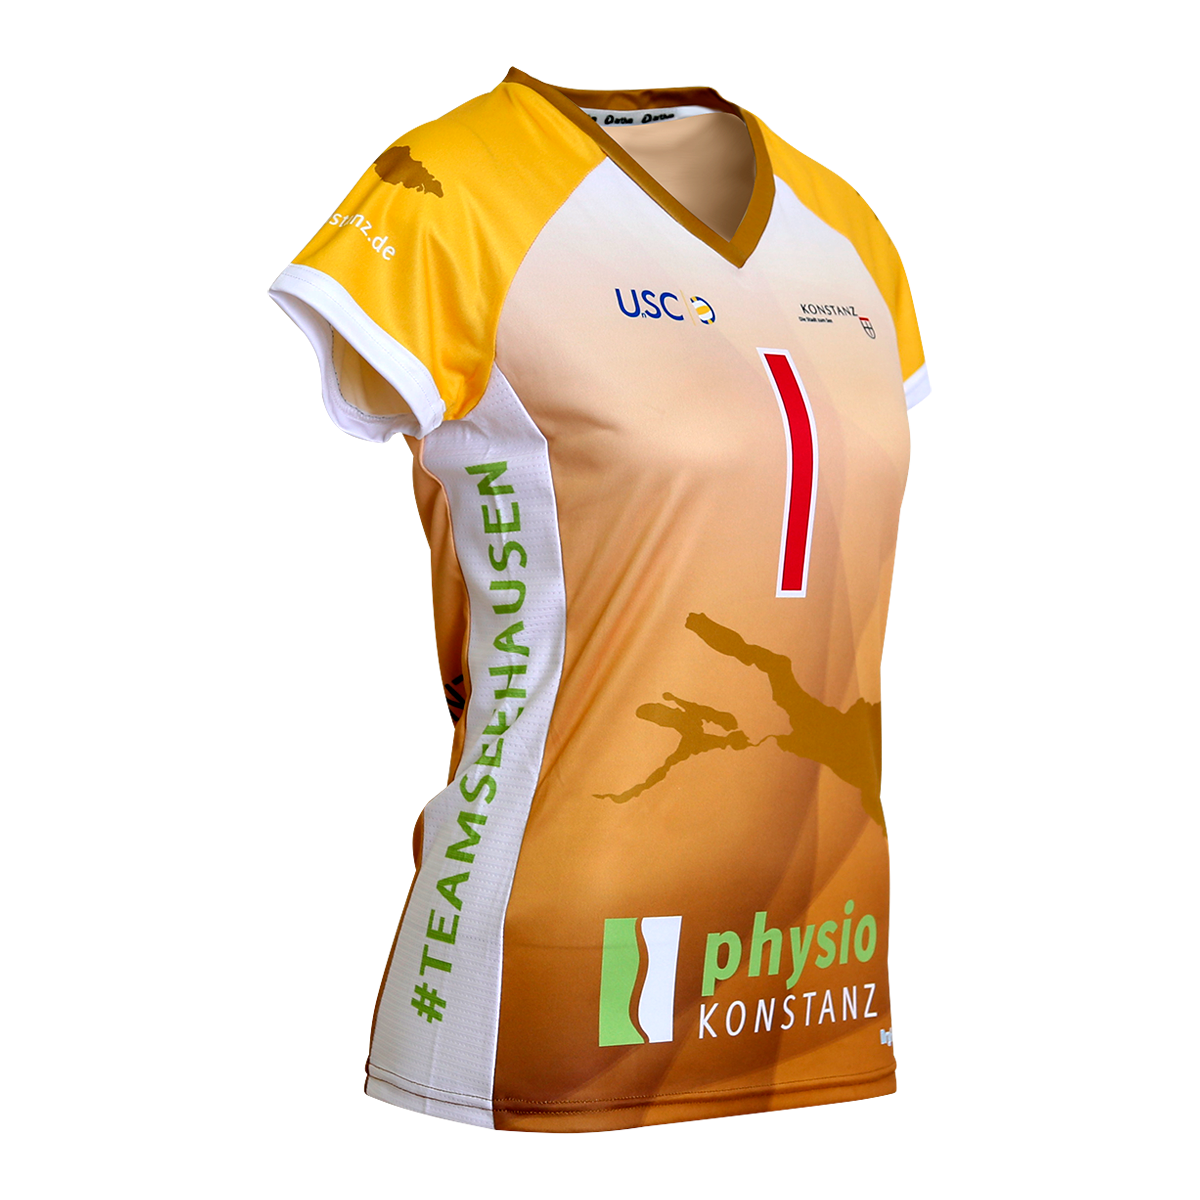 USC-Konstanz-runningshirt-gold-women-side